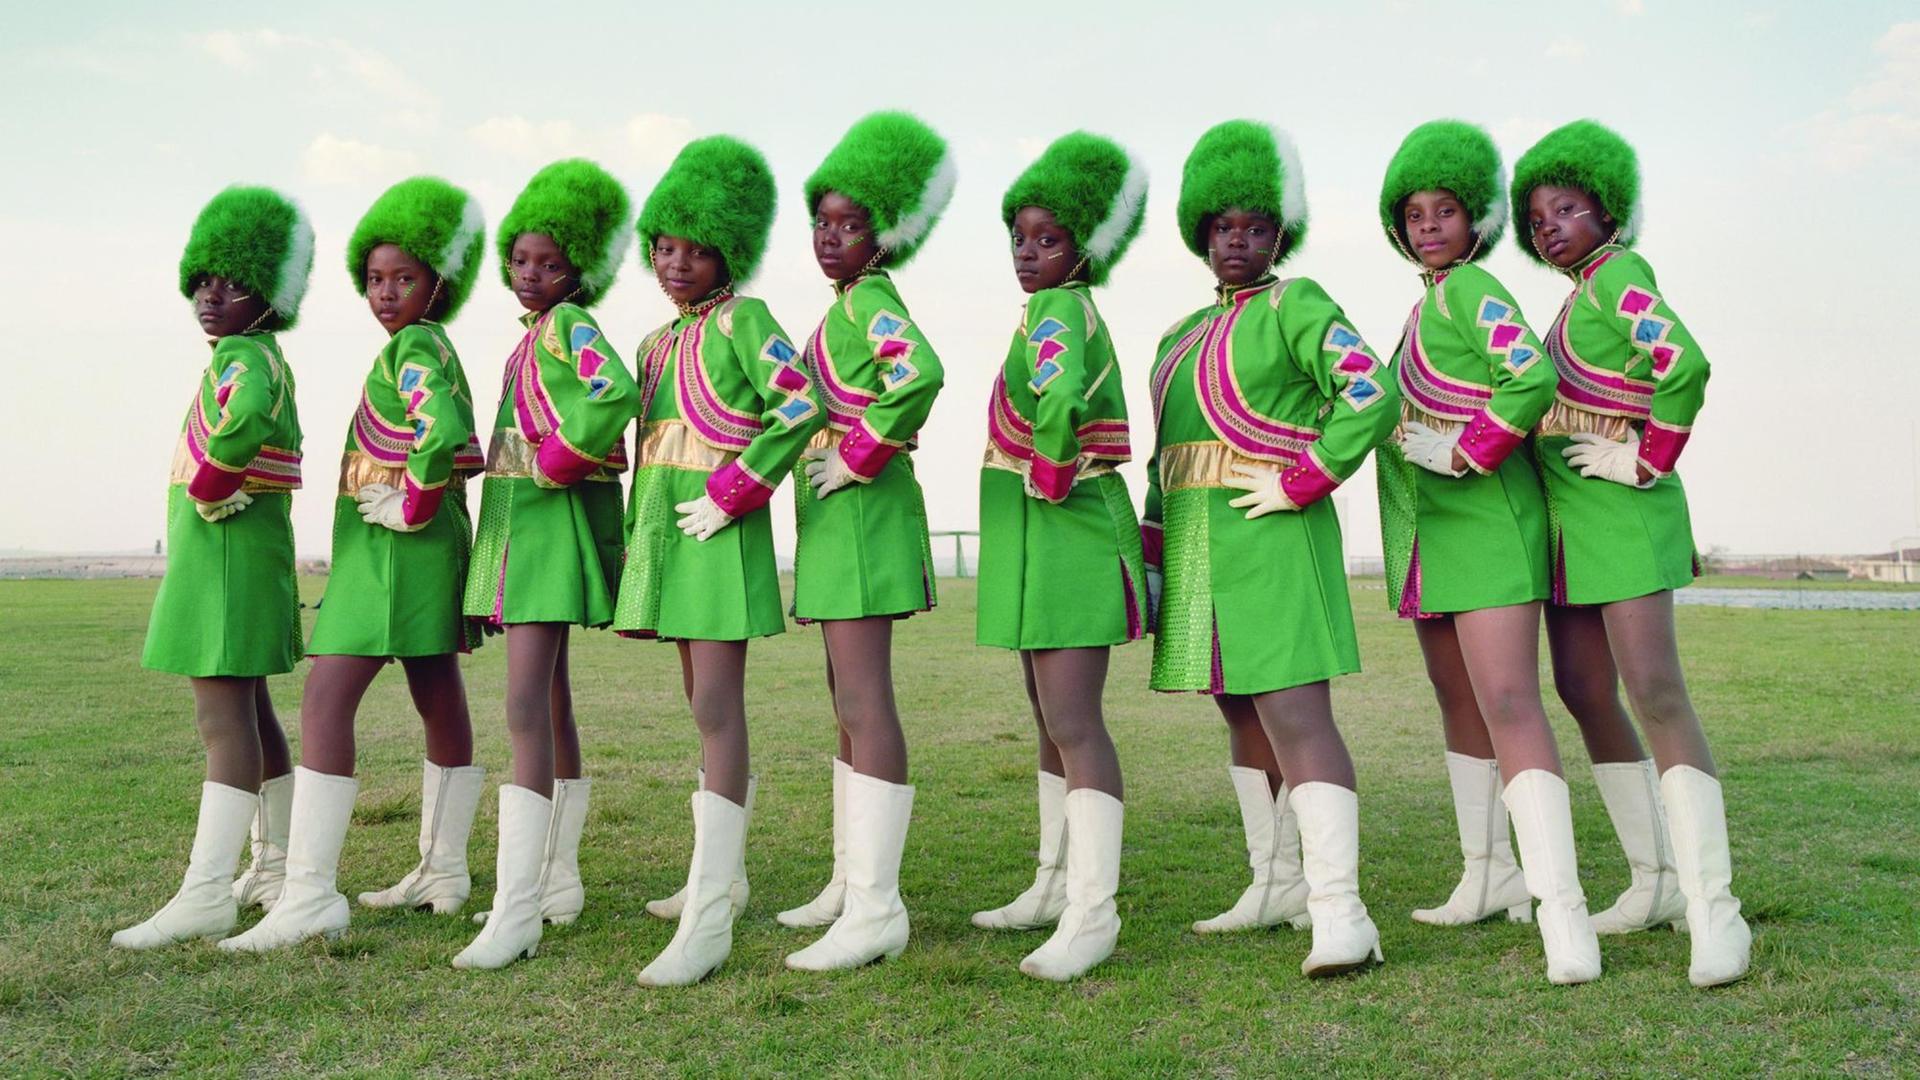 Neun Frauen in knallgrünen Kostümen.